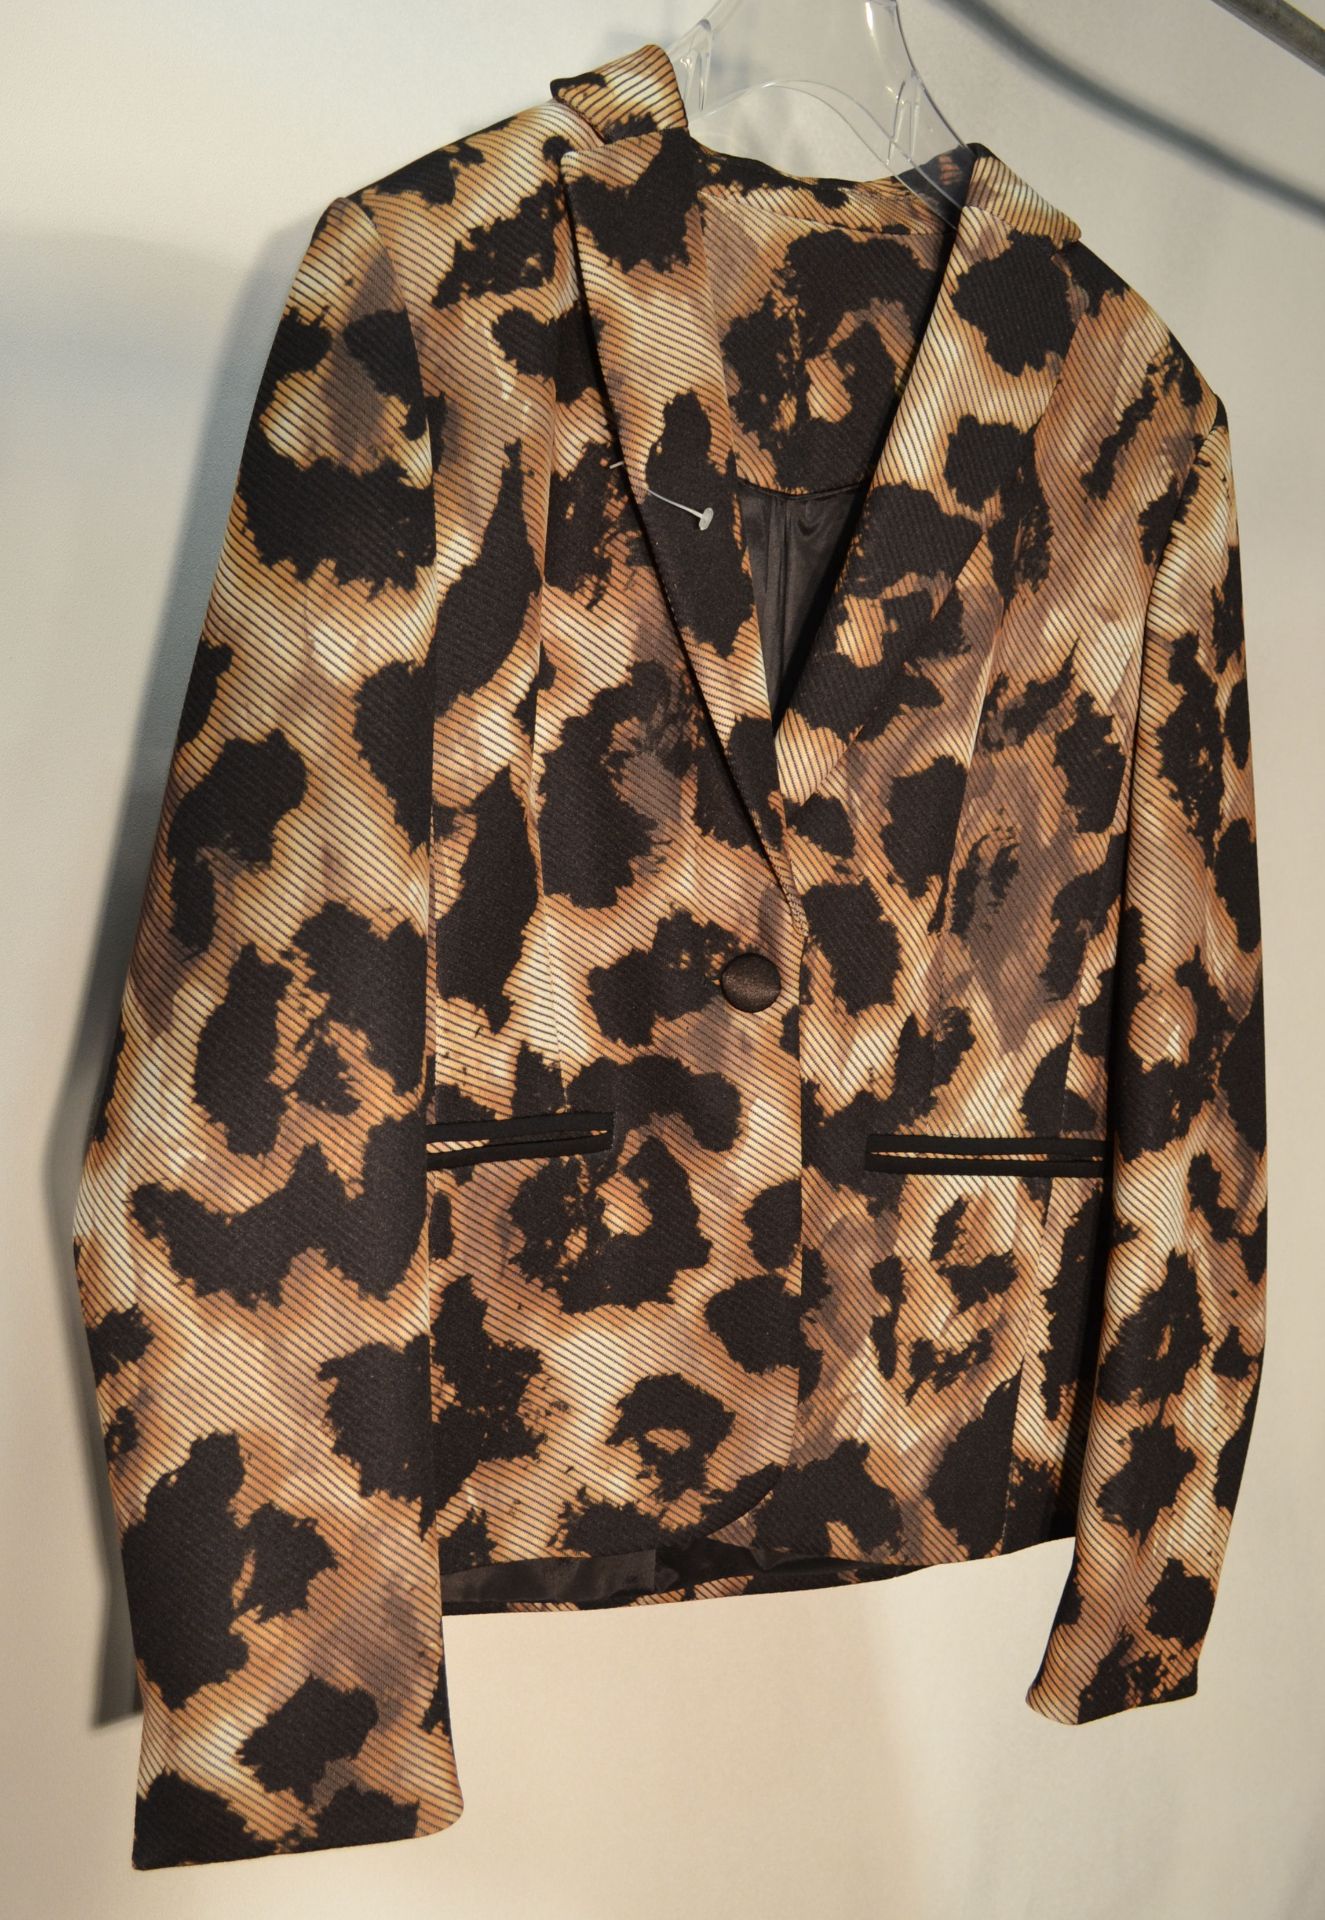 1 x Steilmann Kirsten Animal Print Womens Coat / Jacket - CL210 - Ref SC2011 - Location: Altrincham